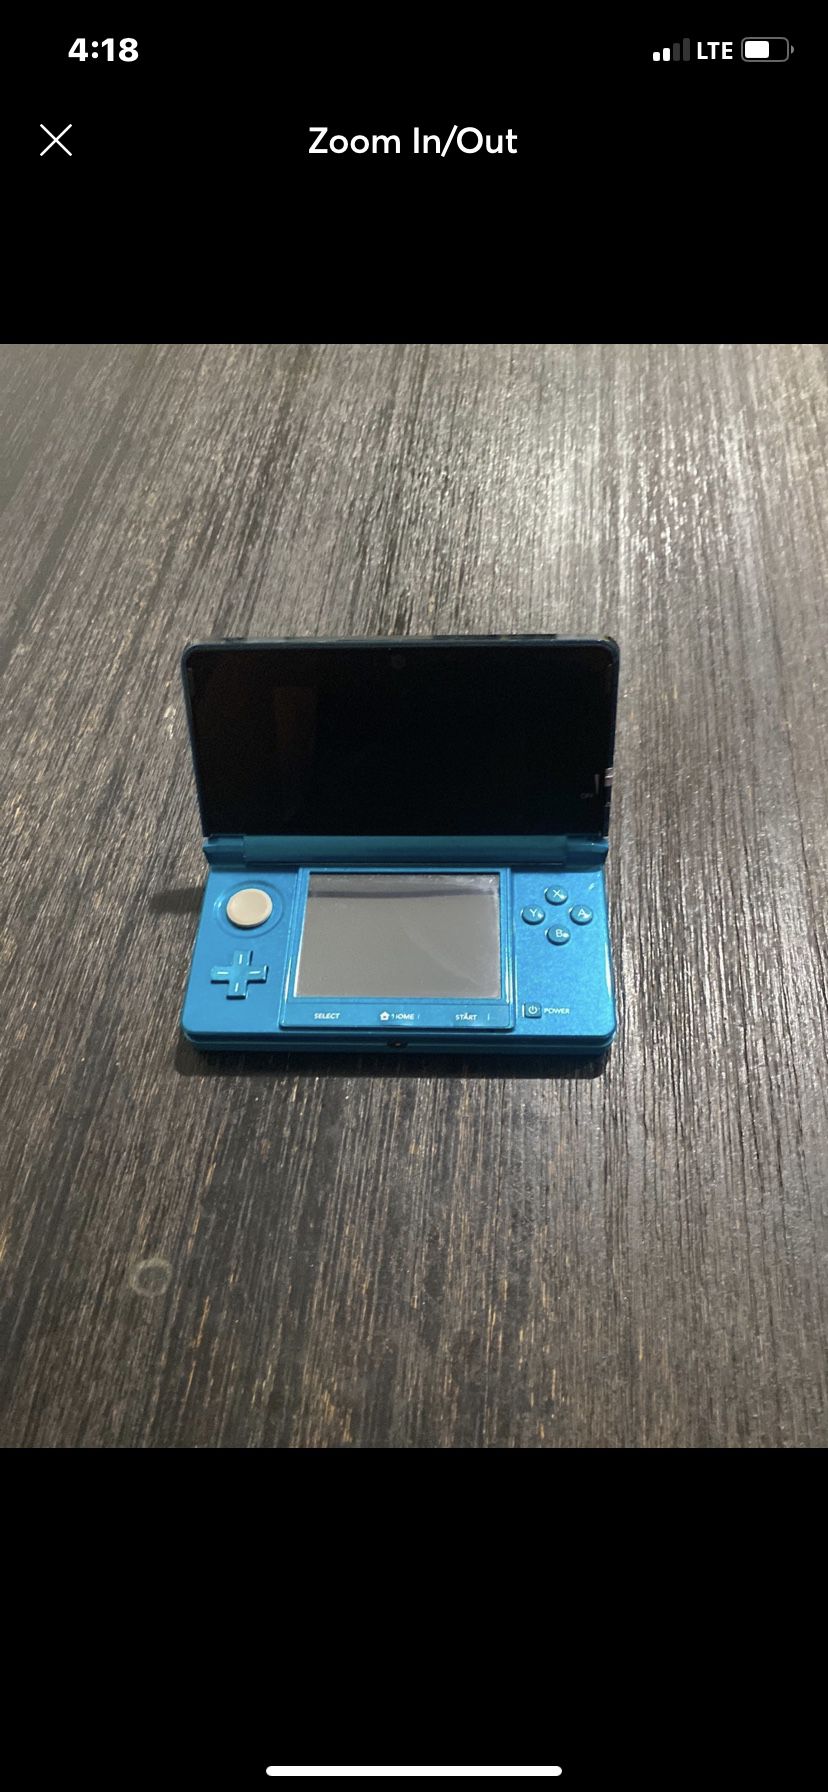 Nintendo 3DS in Aqua Blue/Black